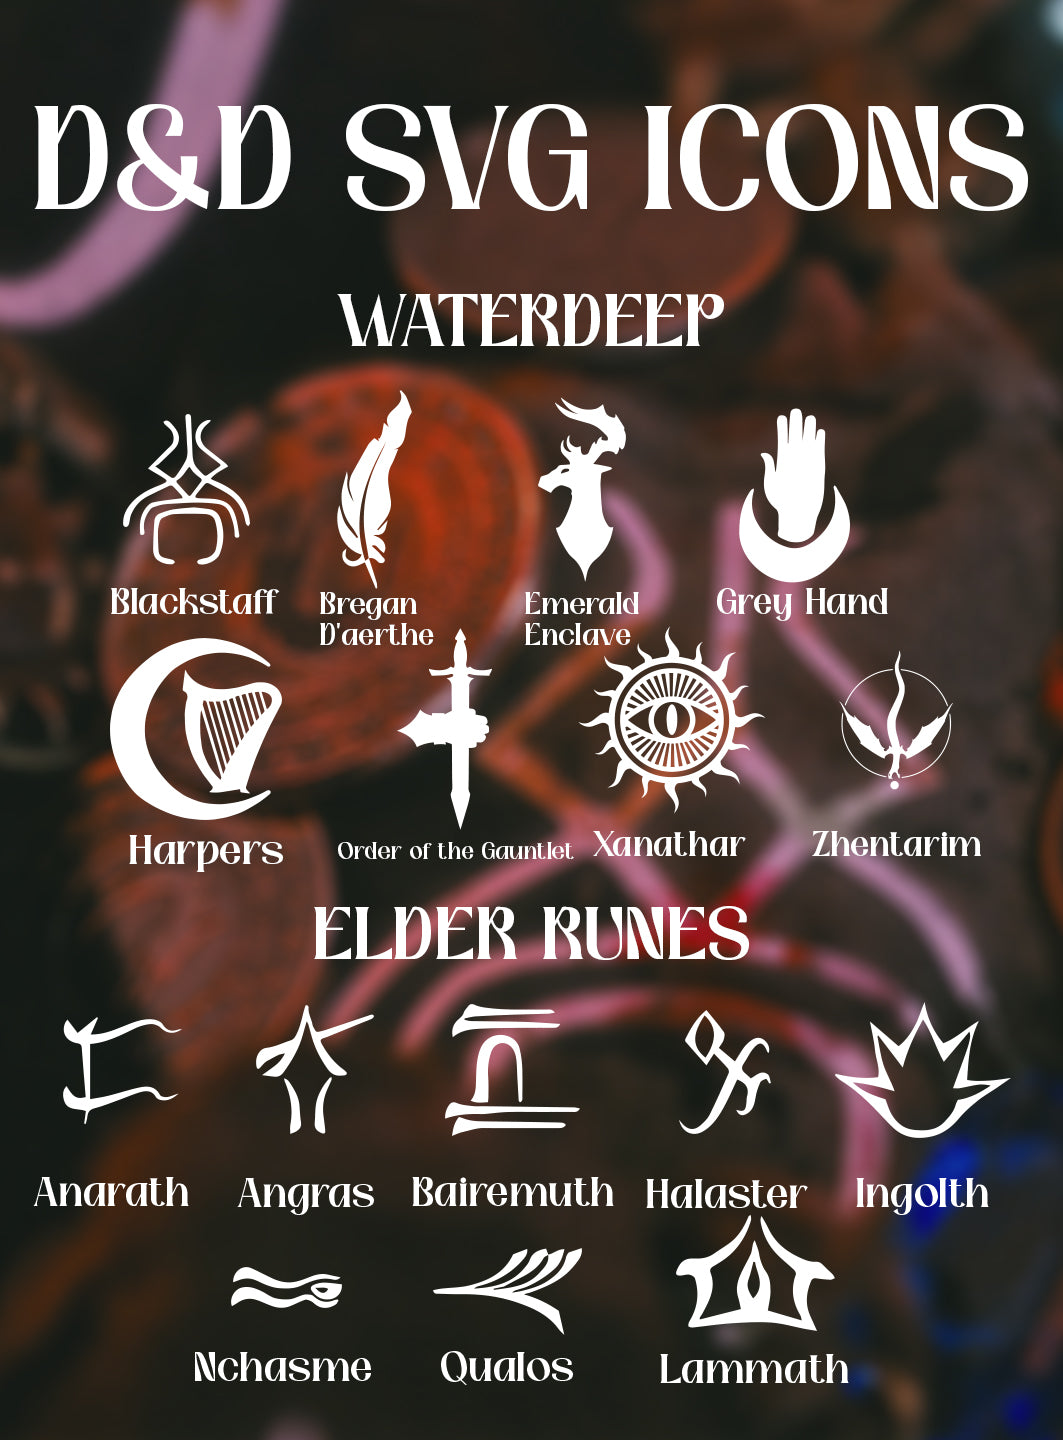 Dungeons & Dragons: Icons of Waterdeep & Elder Rune SVG Files